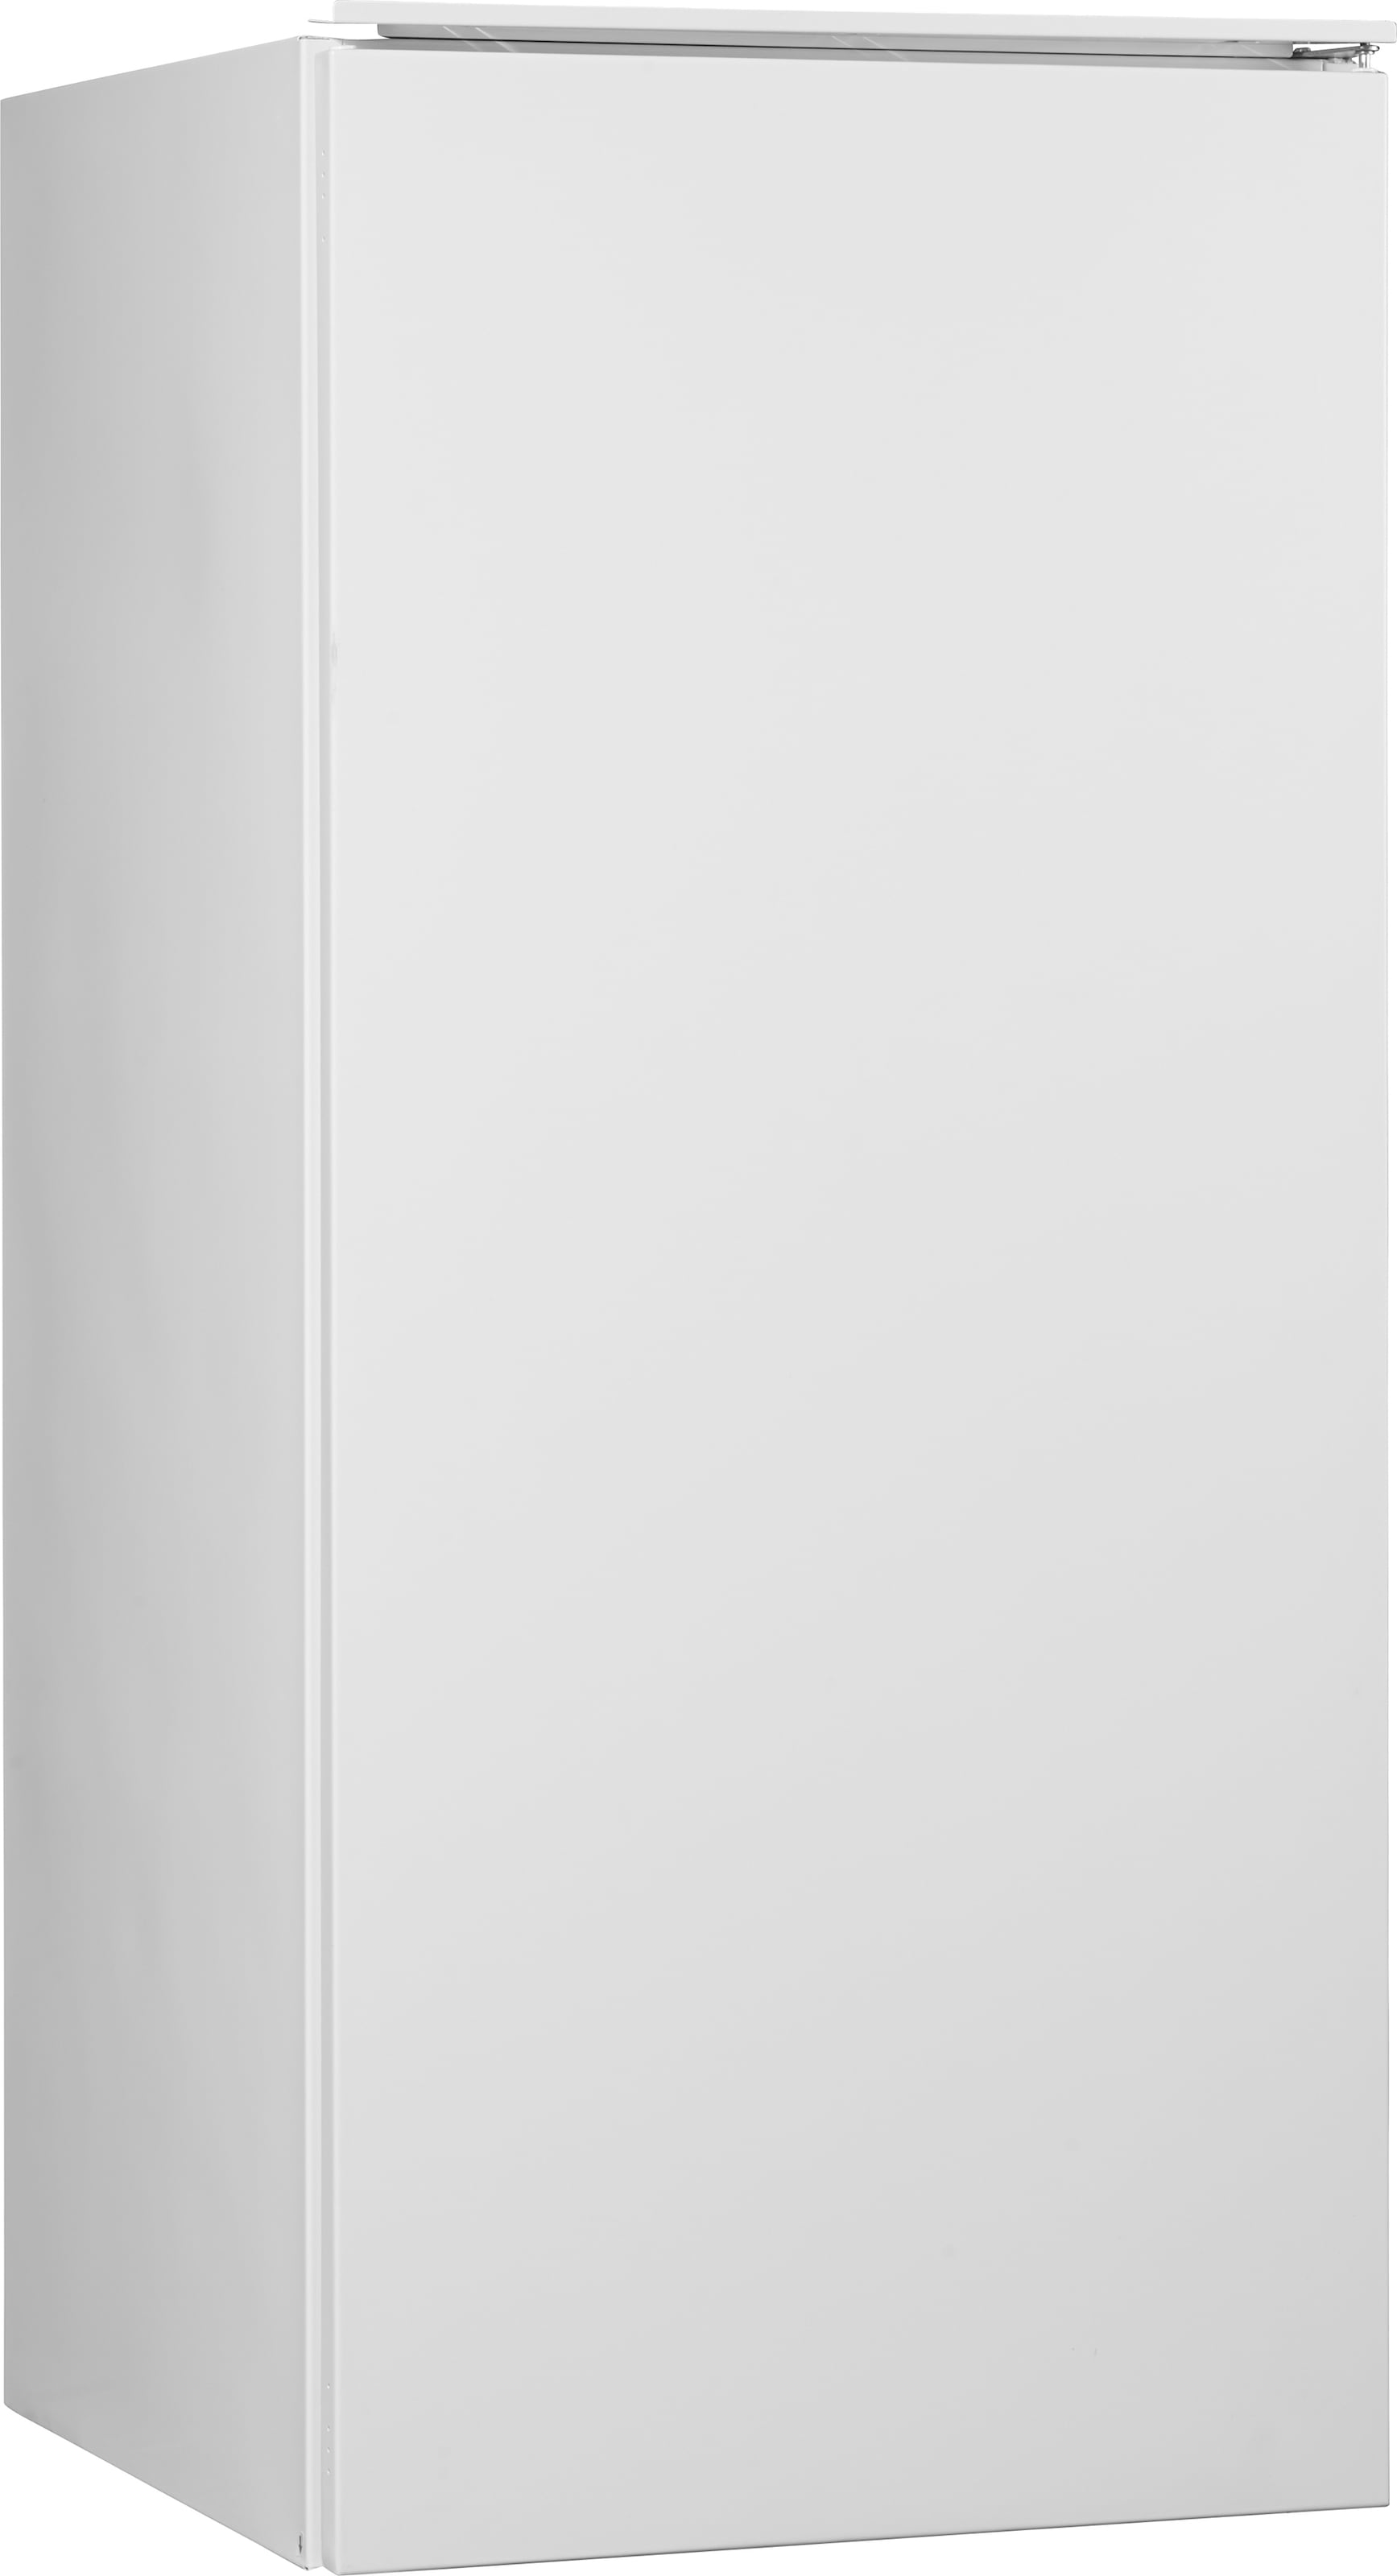 Hanseatic Einbaukühlschrank, HEKS12254GF, 123 cm | BAUR cm hoch, breit 54